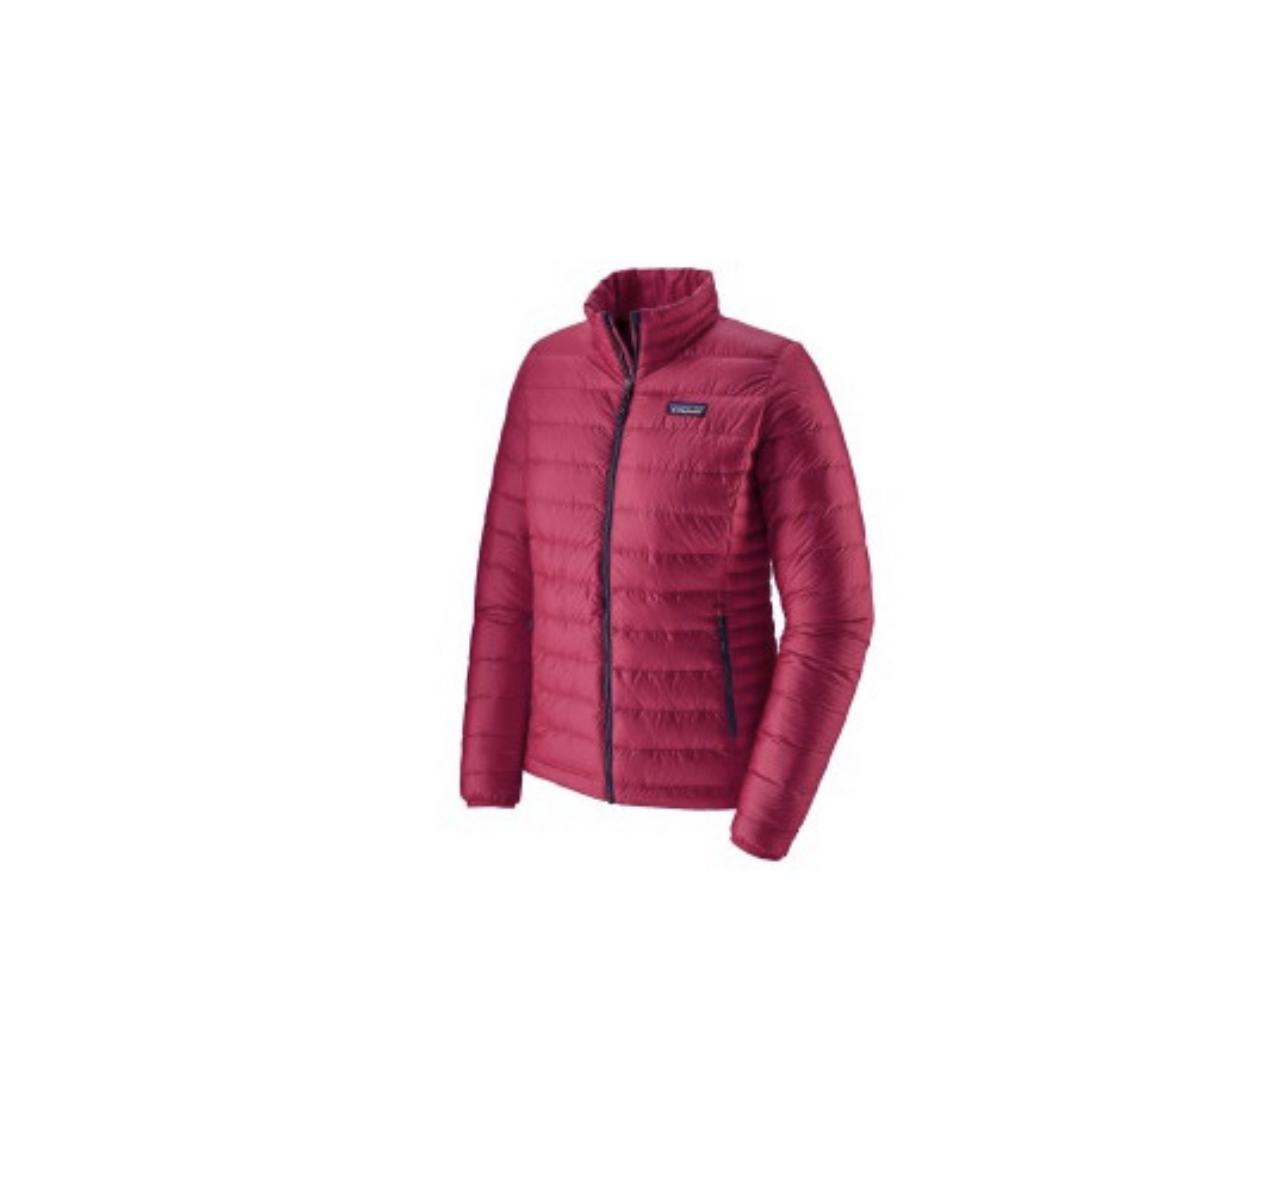 Patagonia Women's Down Sweater Jacket Premium fly fishing sh